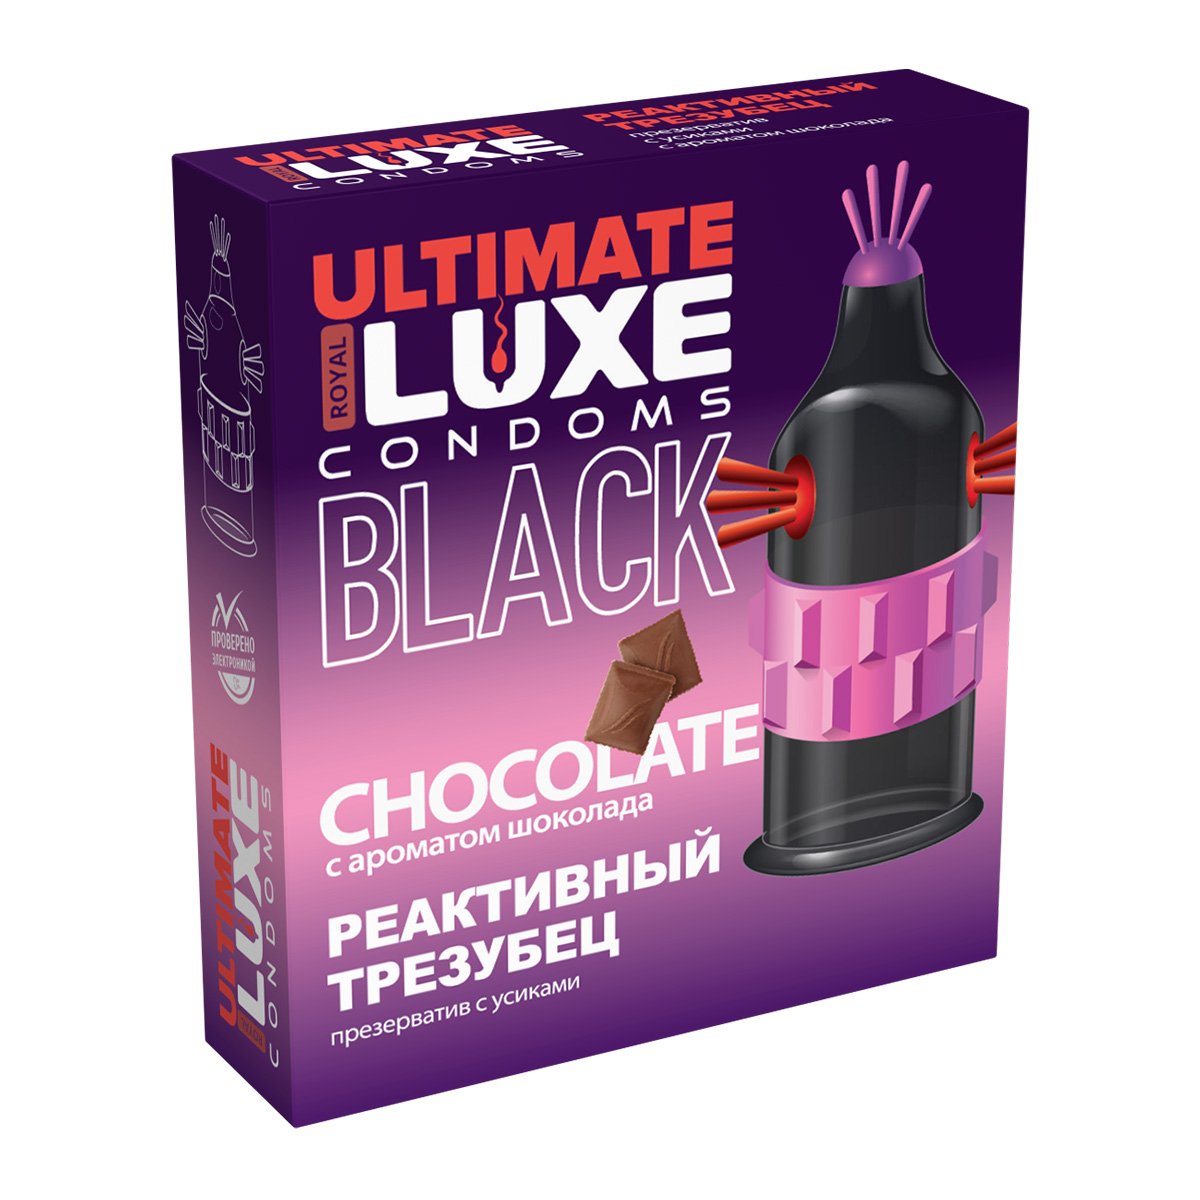 	Эксклюзивный черный презерватив  Luxe EXTREME  BLACK ULTIMATE РЕАКТИВНЫЙ ТРЕЗУБЕЦ (Шоколад), 1 шт.